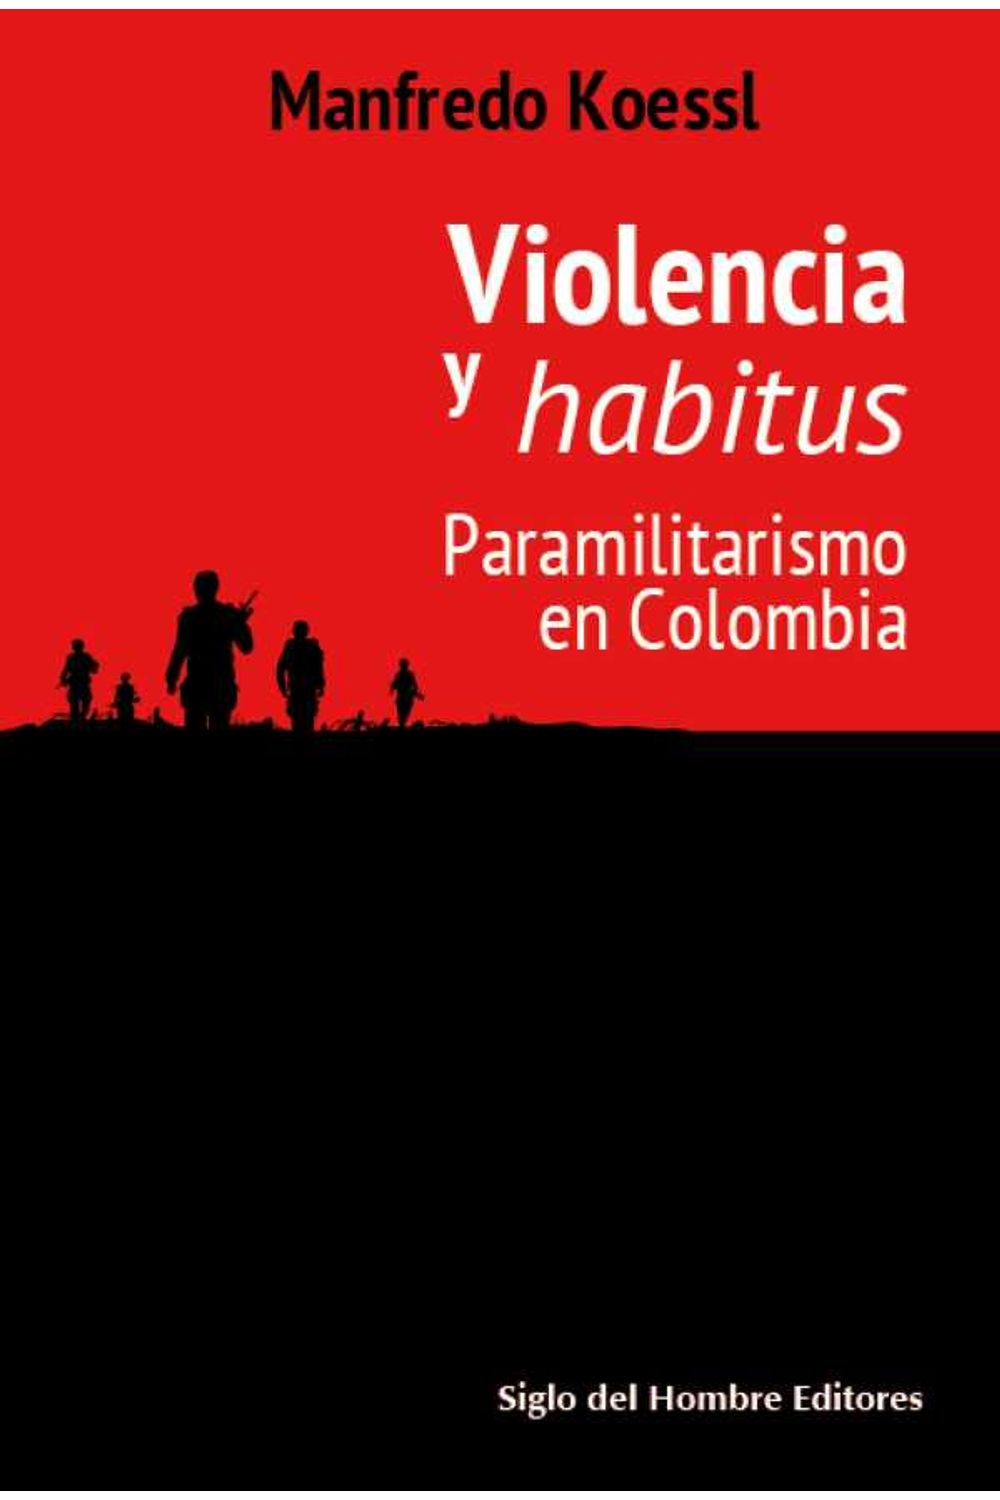 bw-violencia-y-habitus-siglo-del-hombre-editores-9789586653466